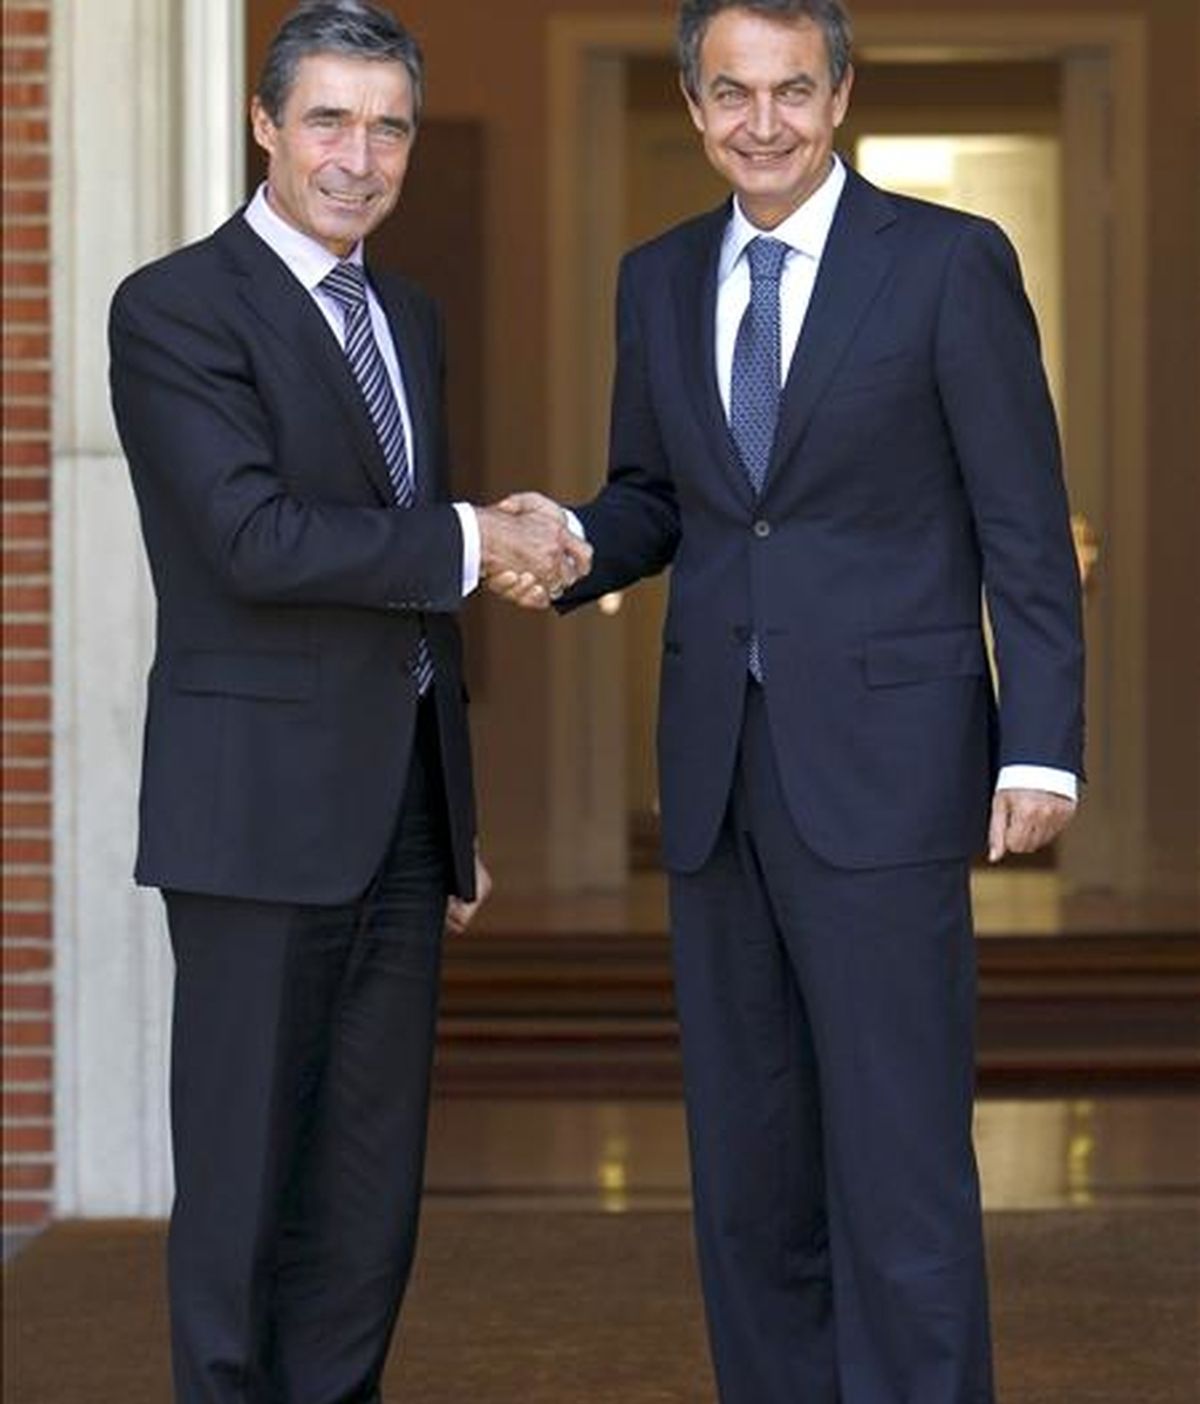 El presidente del Gobierno, José Luis Rodríguez Zapatero (d), saluda al secretario general de la OTAN, Anders Fogh Rasmussen, a quien recibió hoy en el Palacio de la Moncloa con motivo de su visita de trabajo a España. EFE